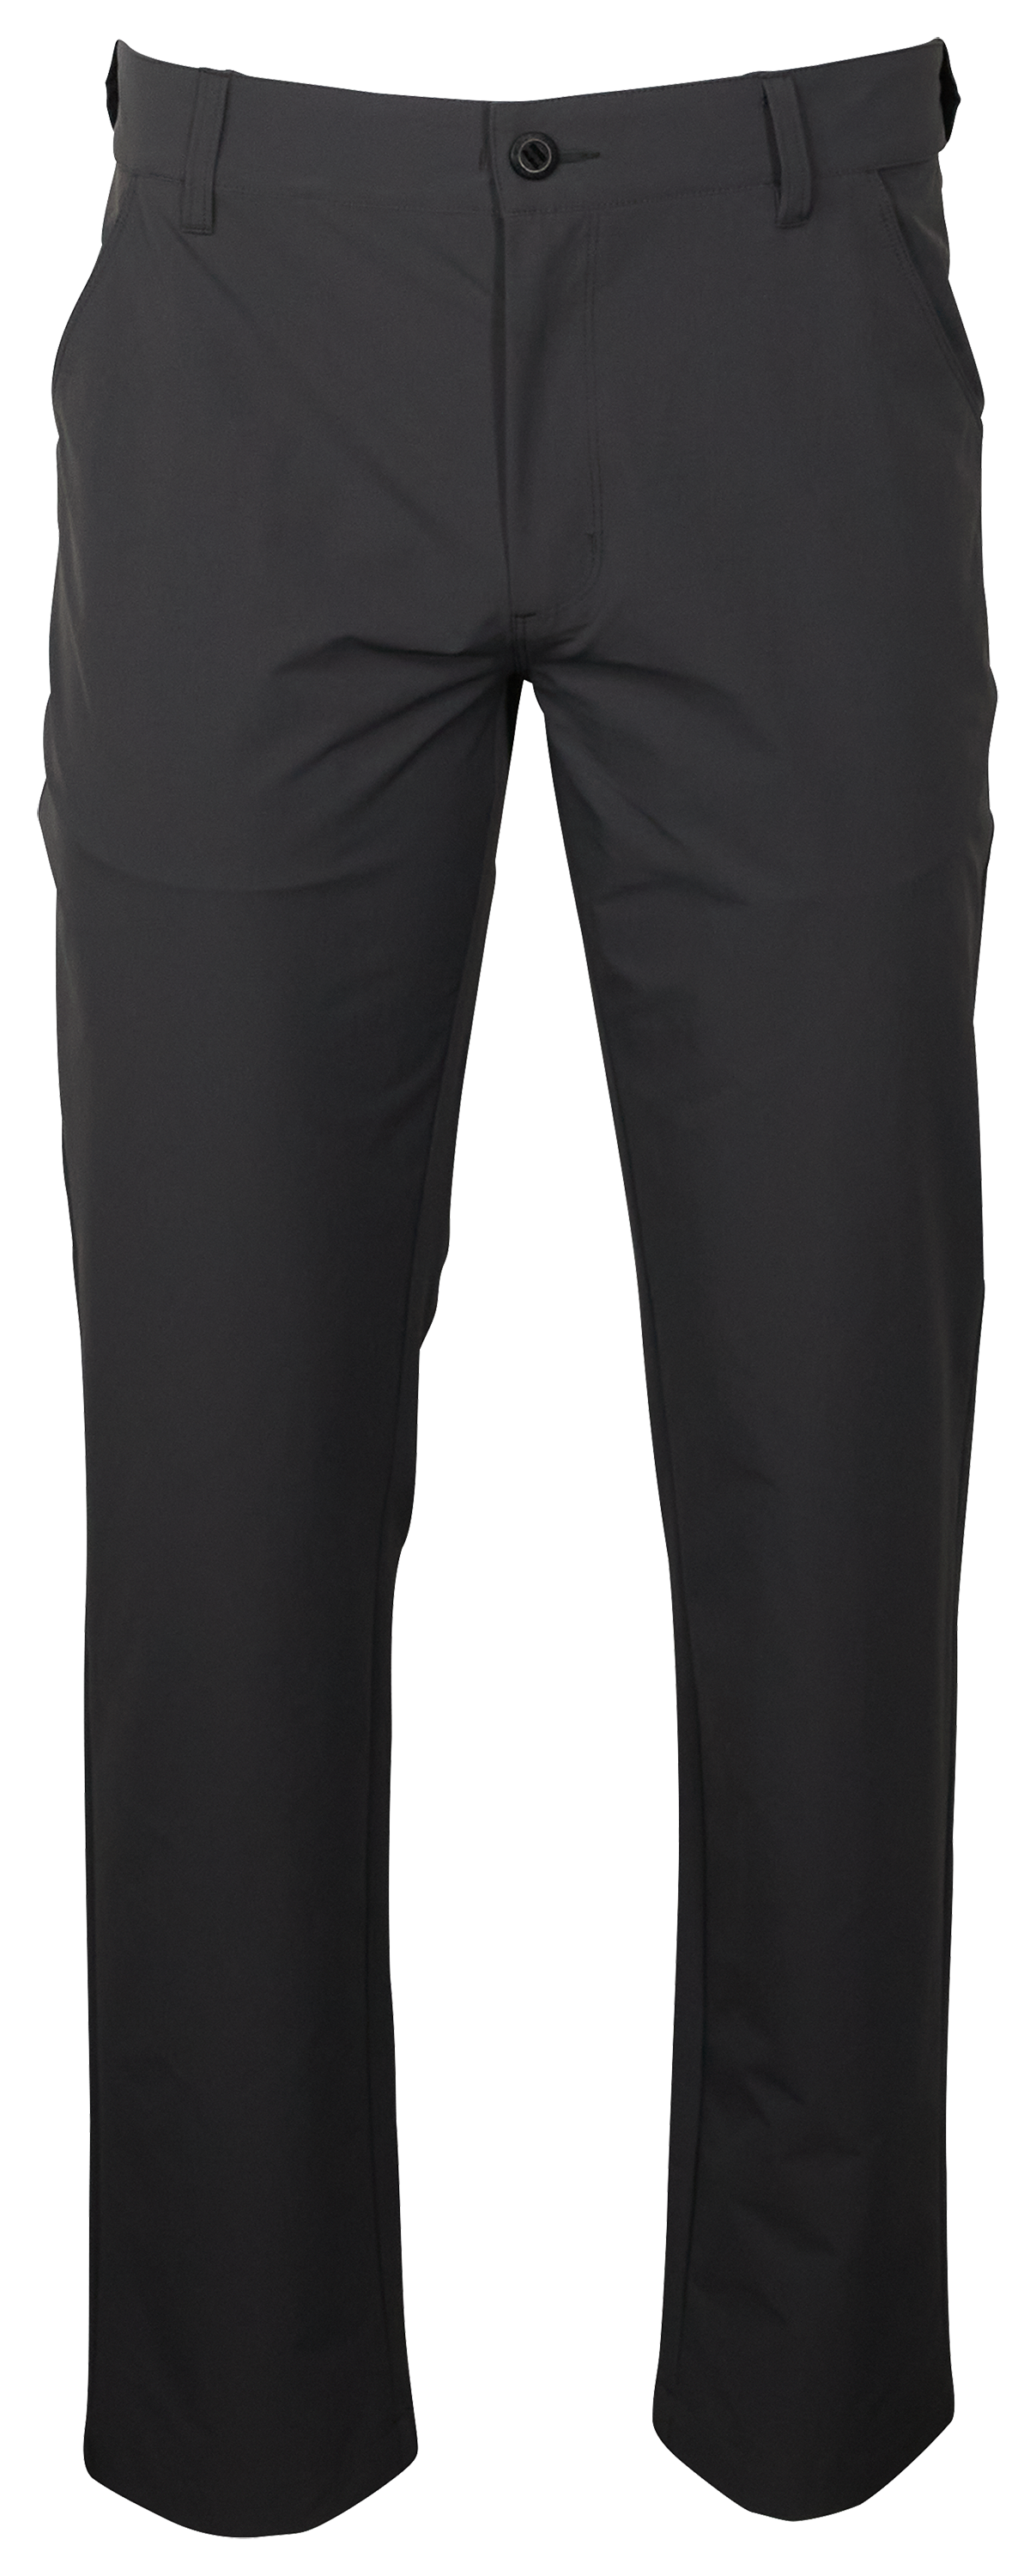 World Wide Sportsman Ultimate Angler Pants for Men - Asphalt - 46x30